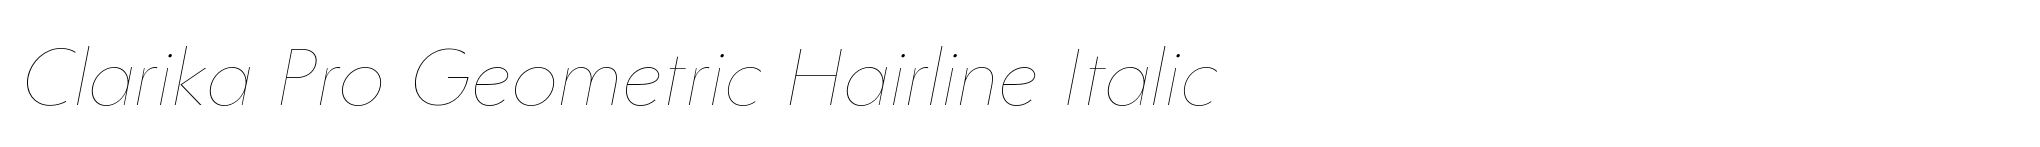 Clarika Pro Geometric Hairline Italic image